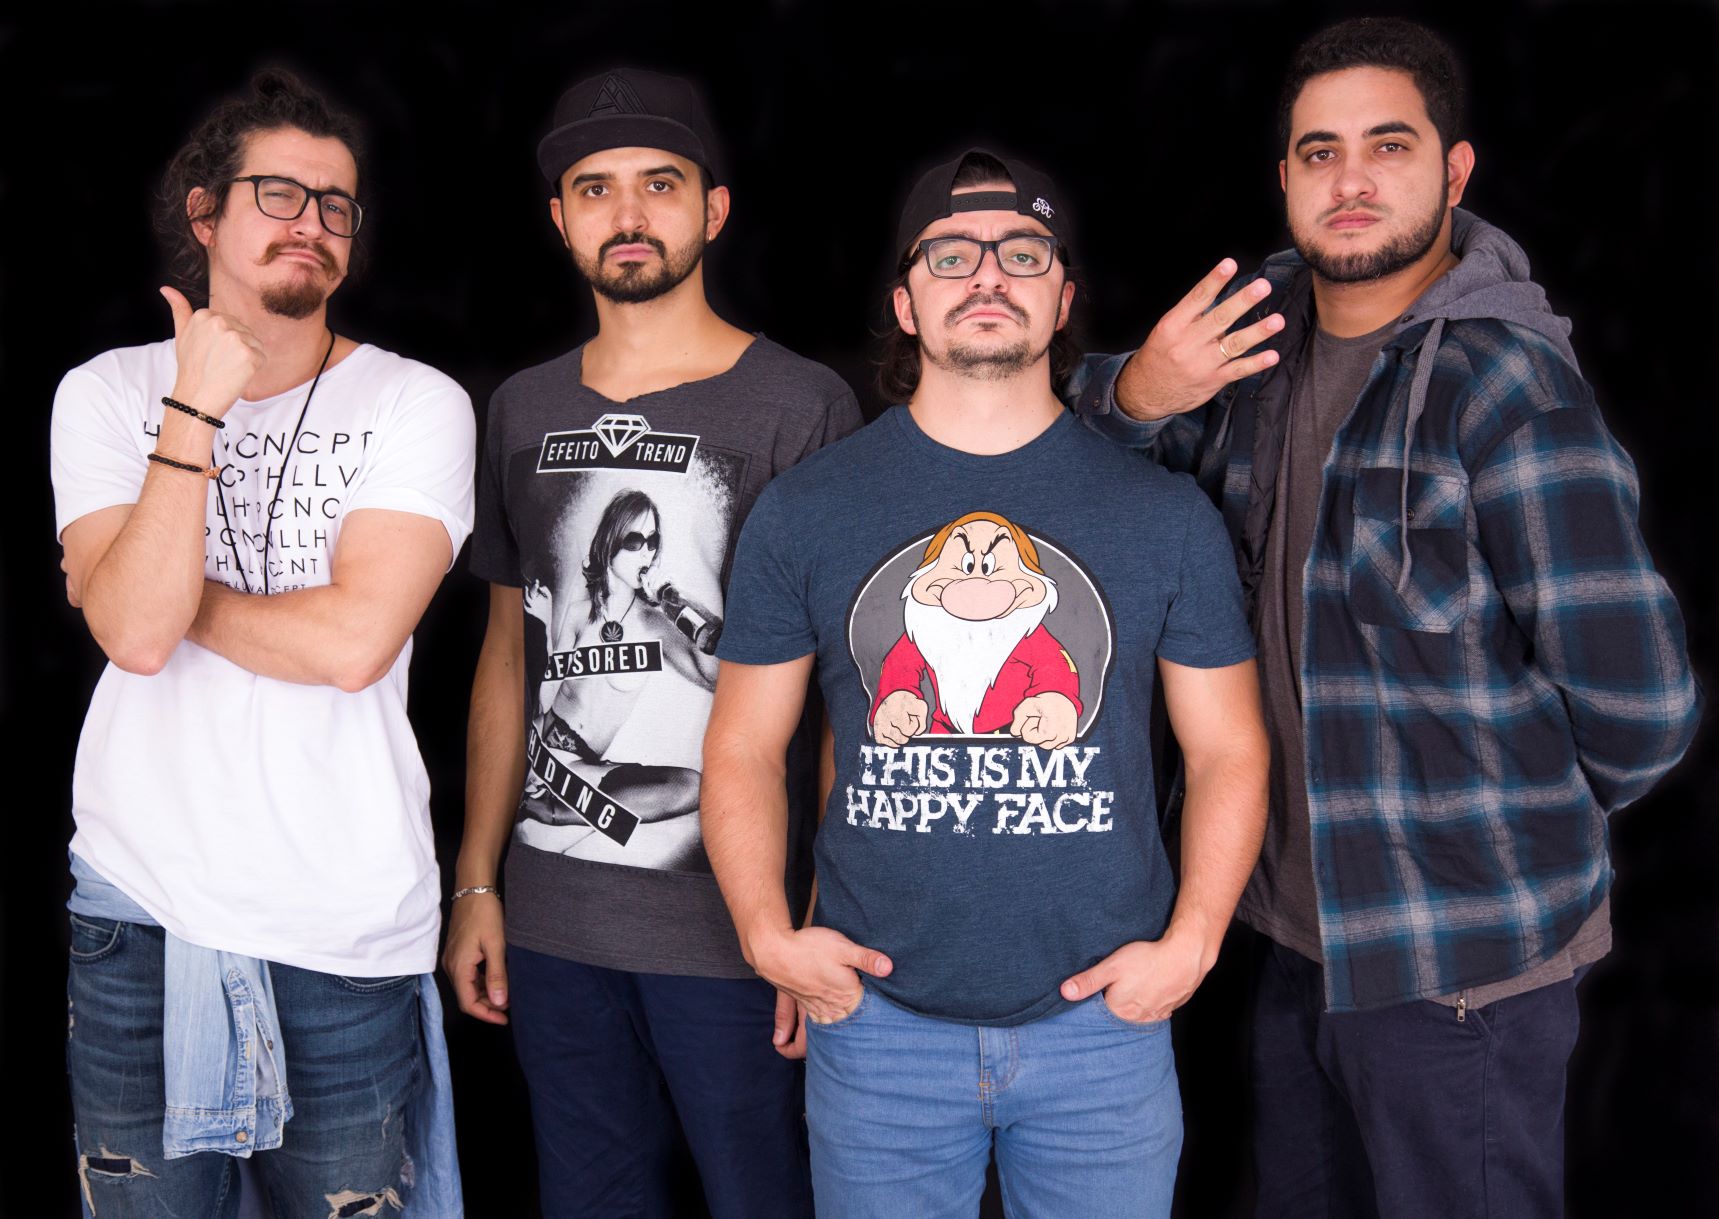 Ribeirão Preto recebe o espetáculo "4 amigos" no domingo, dia 30